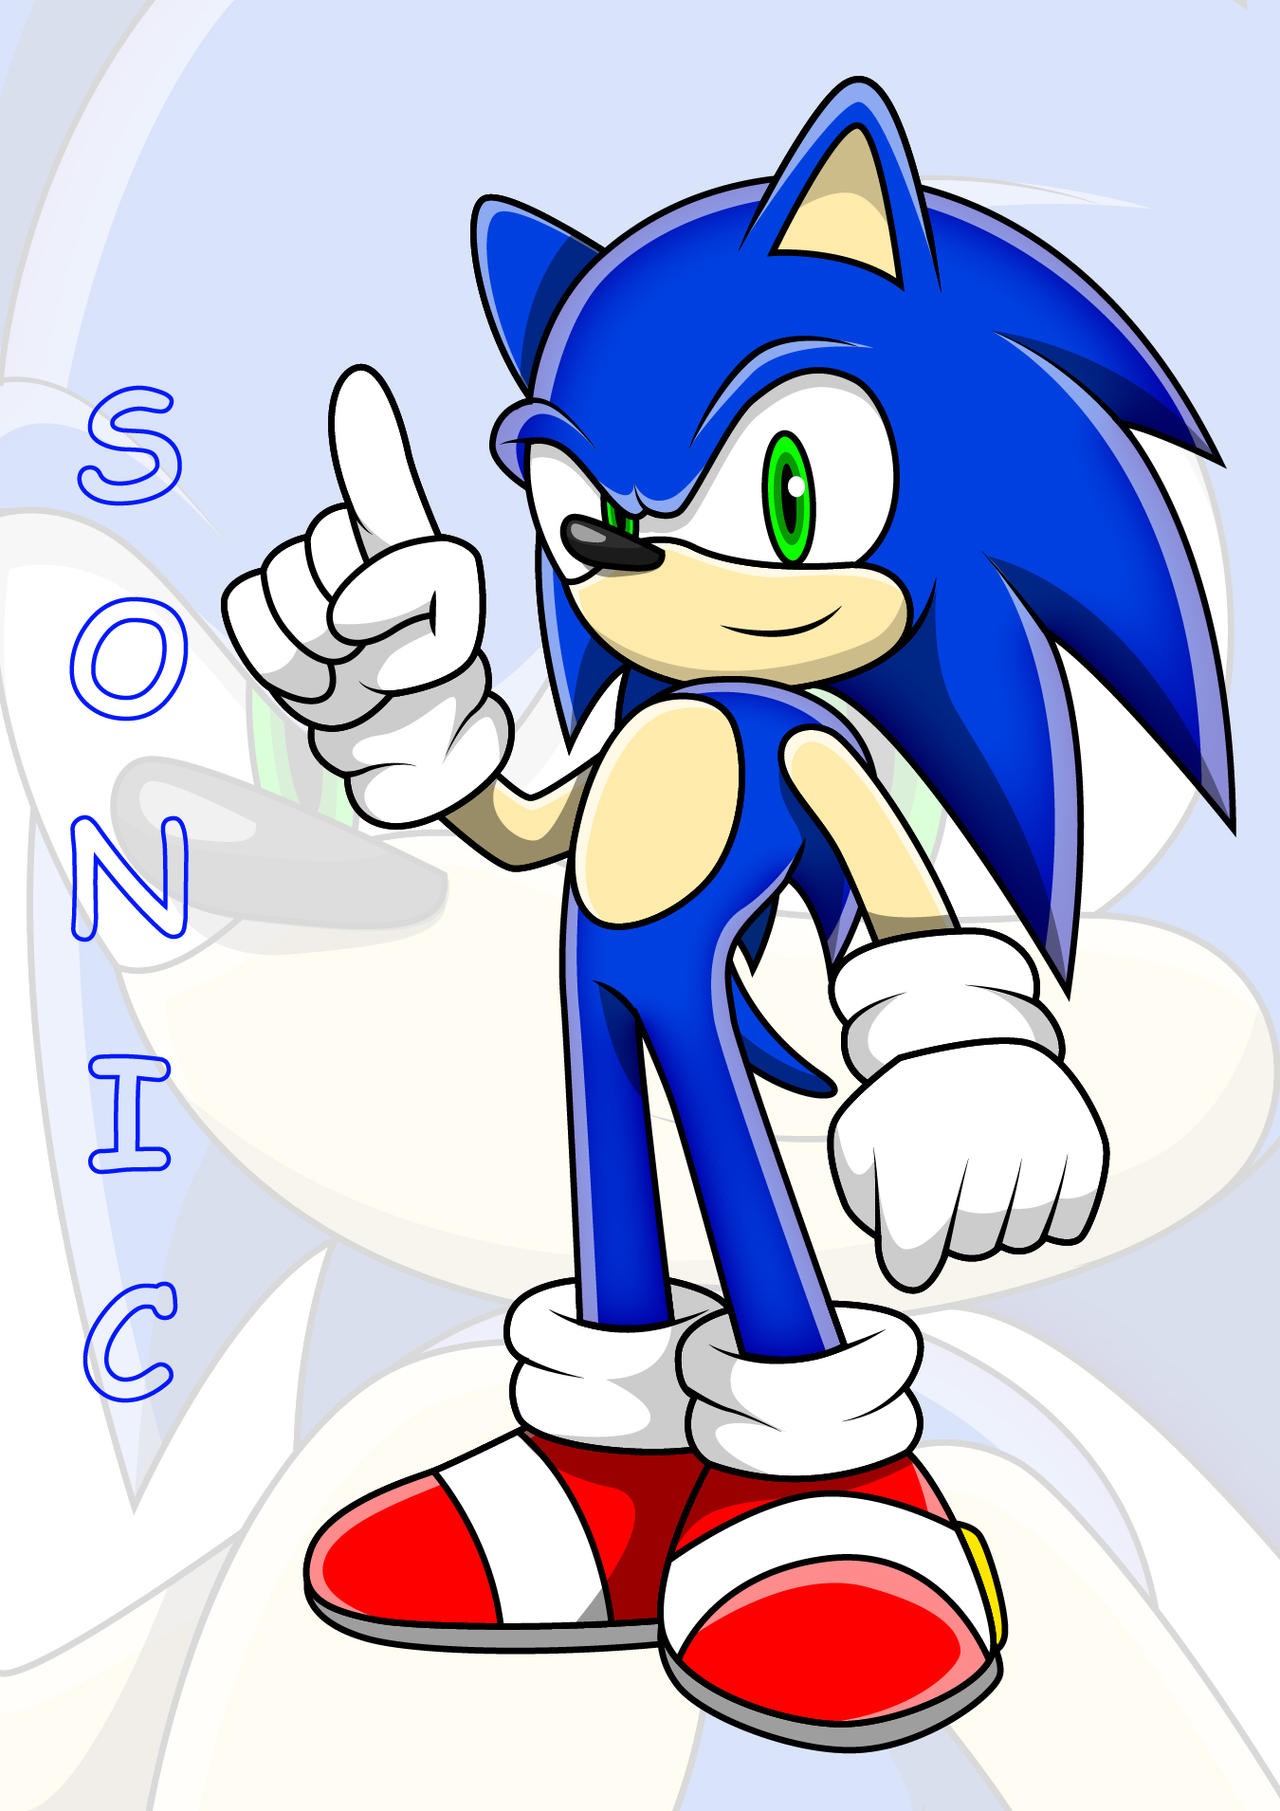 ง'̀-'́)ง  Sonic, Hedgehog art, Sonic the hedgehog